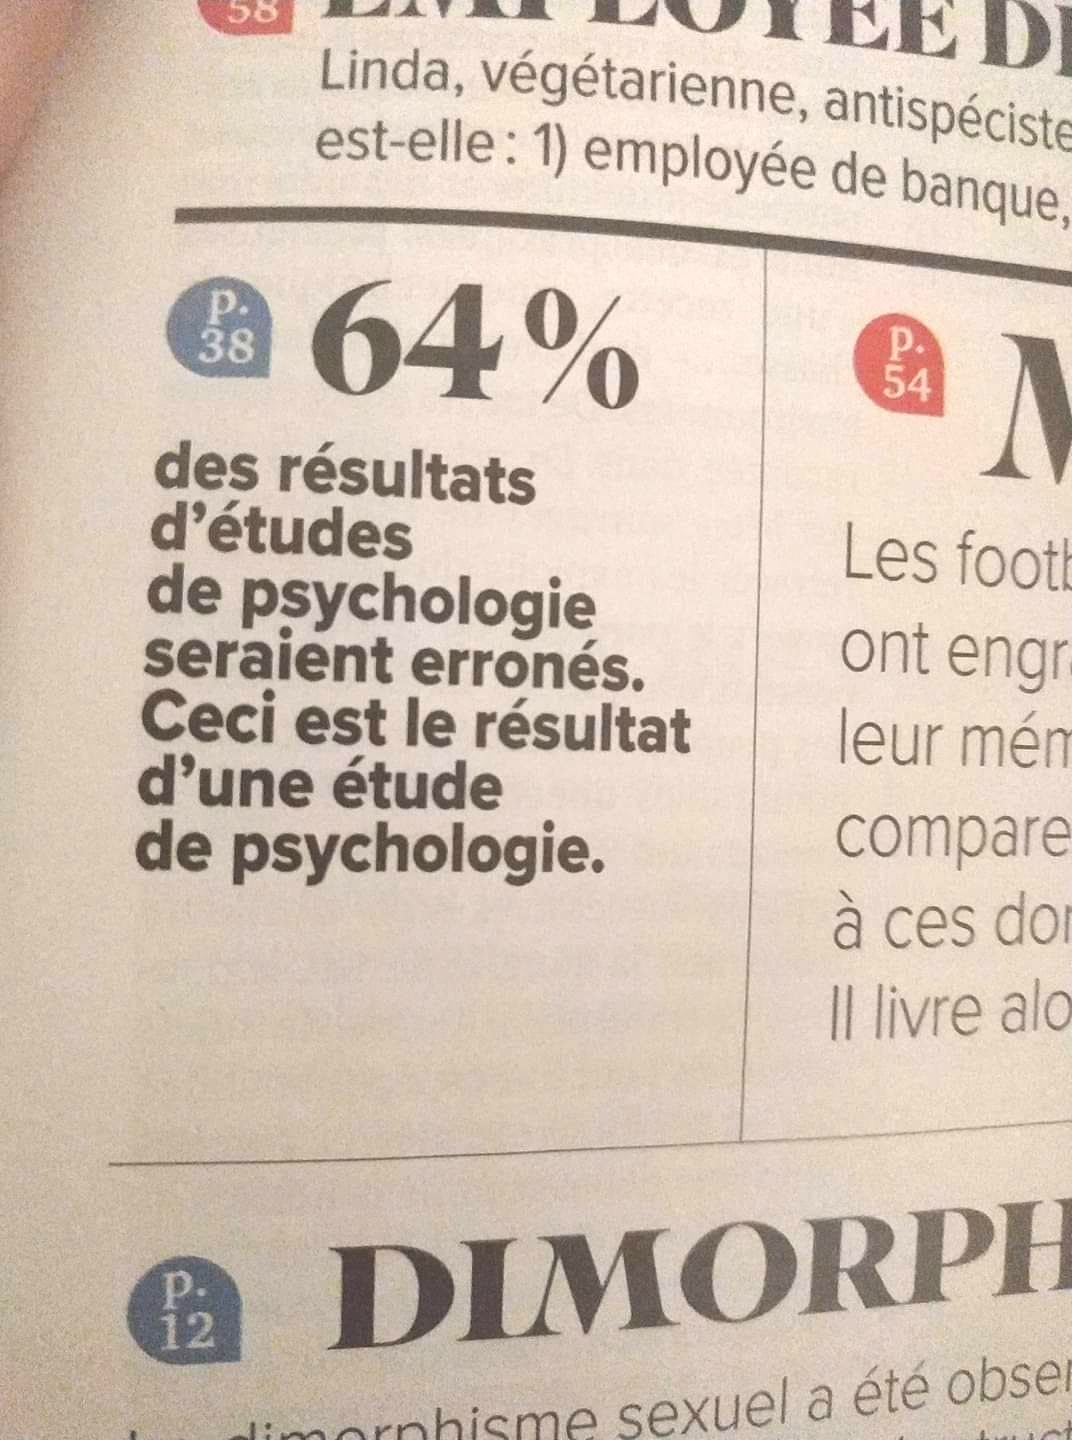 64% des résultats d'études de psychologie seraient erronés. Ceci est le résultat d'une étude de psychologie.